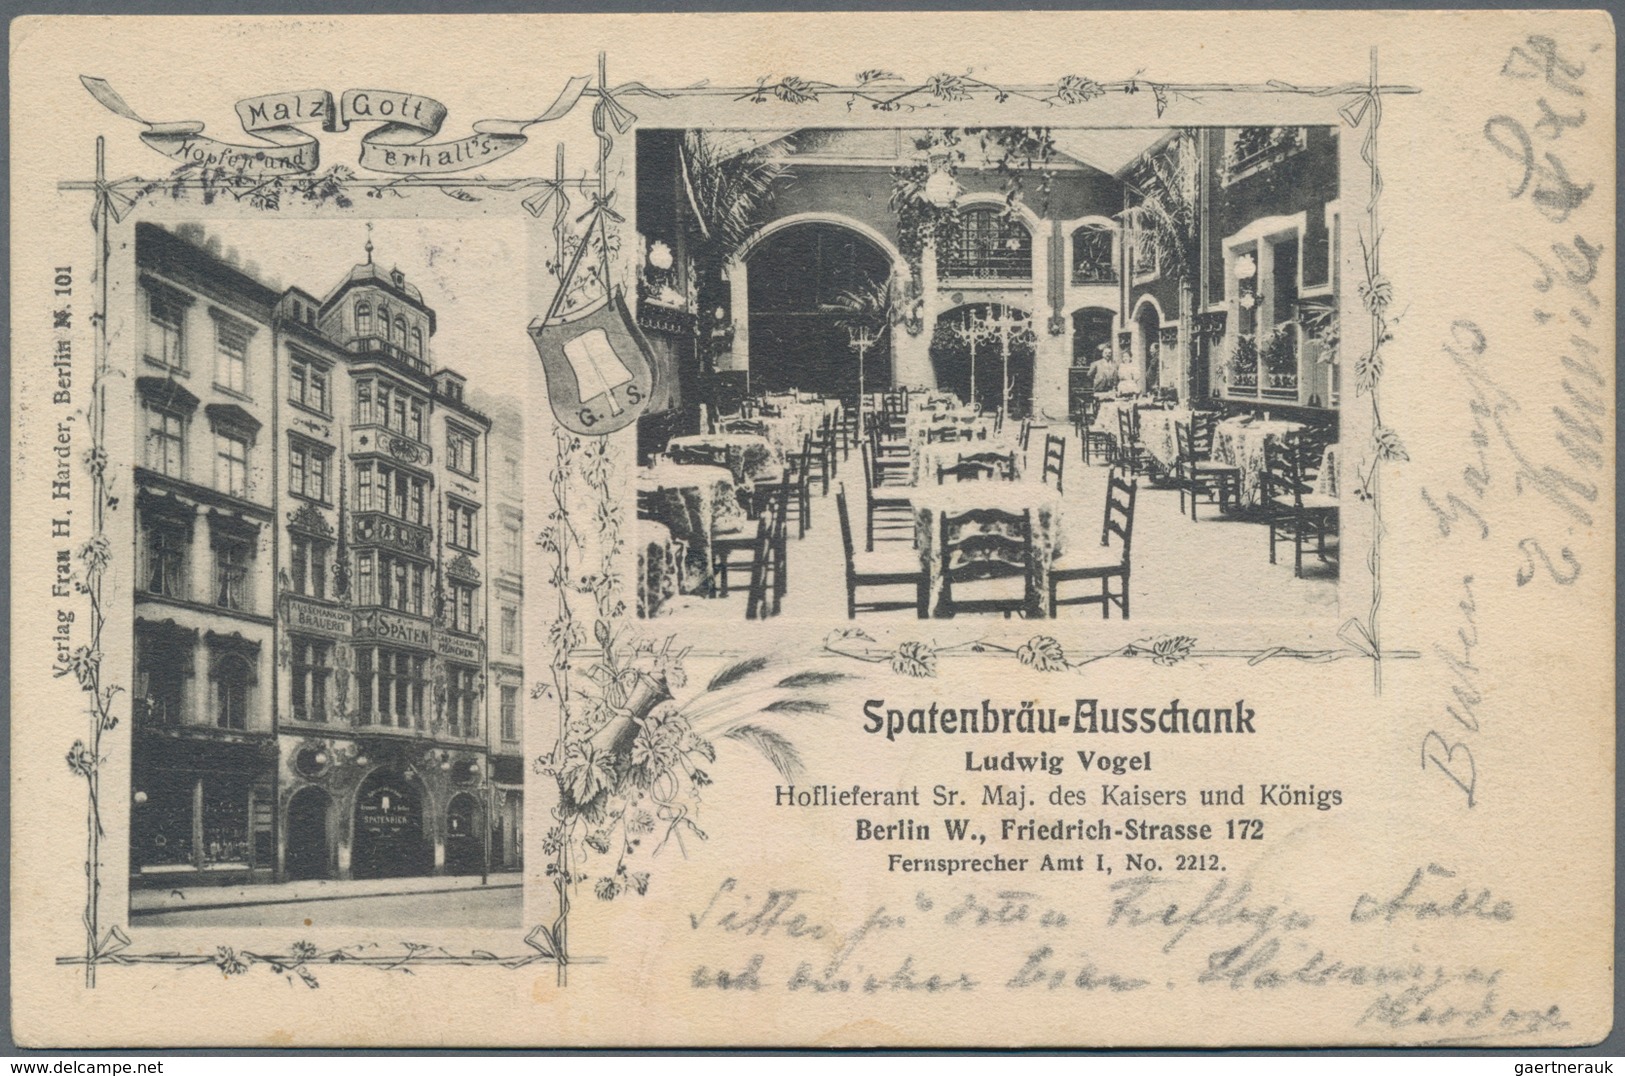 Ansichtskarten: Deutschland: 1900/1940 (ca.), Partie von ca. 61 Karten mit meist Topographie und auc